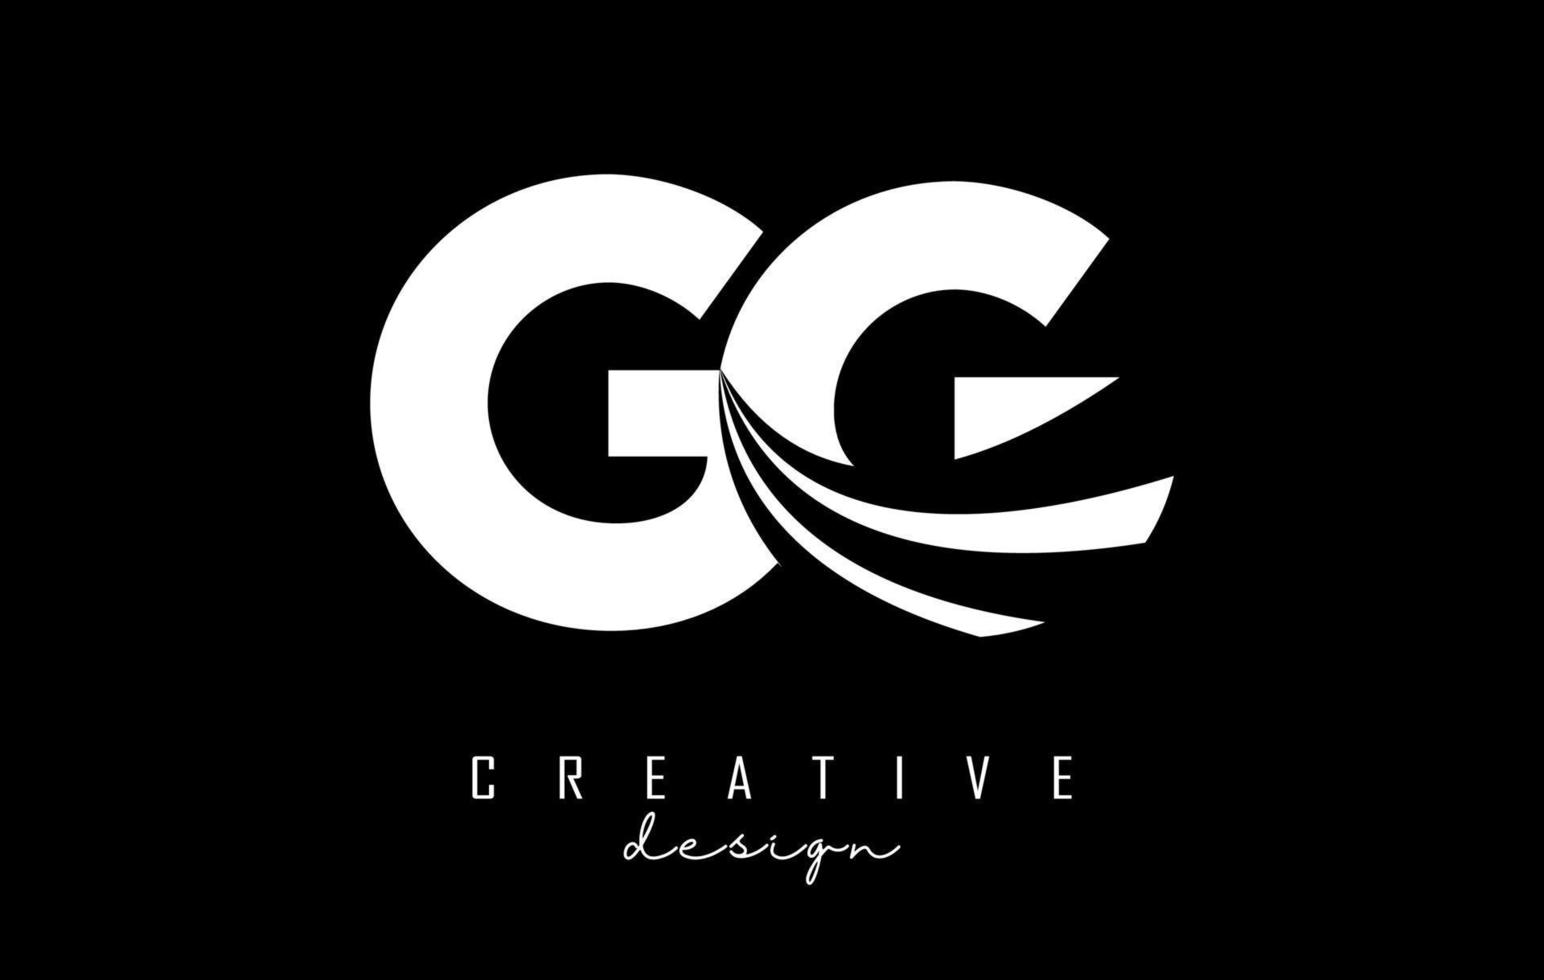 kreative weiße buchstaben gg g logo mit führenden linien und straßenkonzeptdesign. Buchstaben mit geometrischem Design. vektor